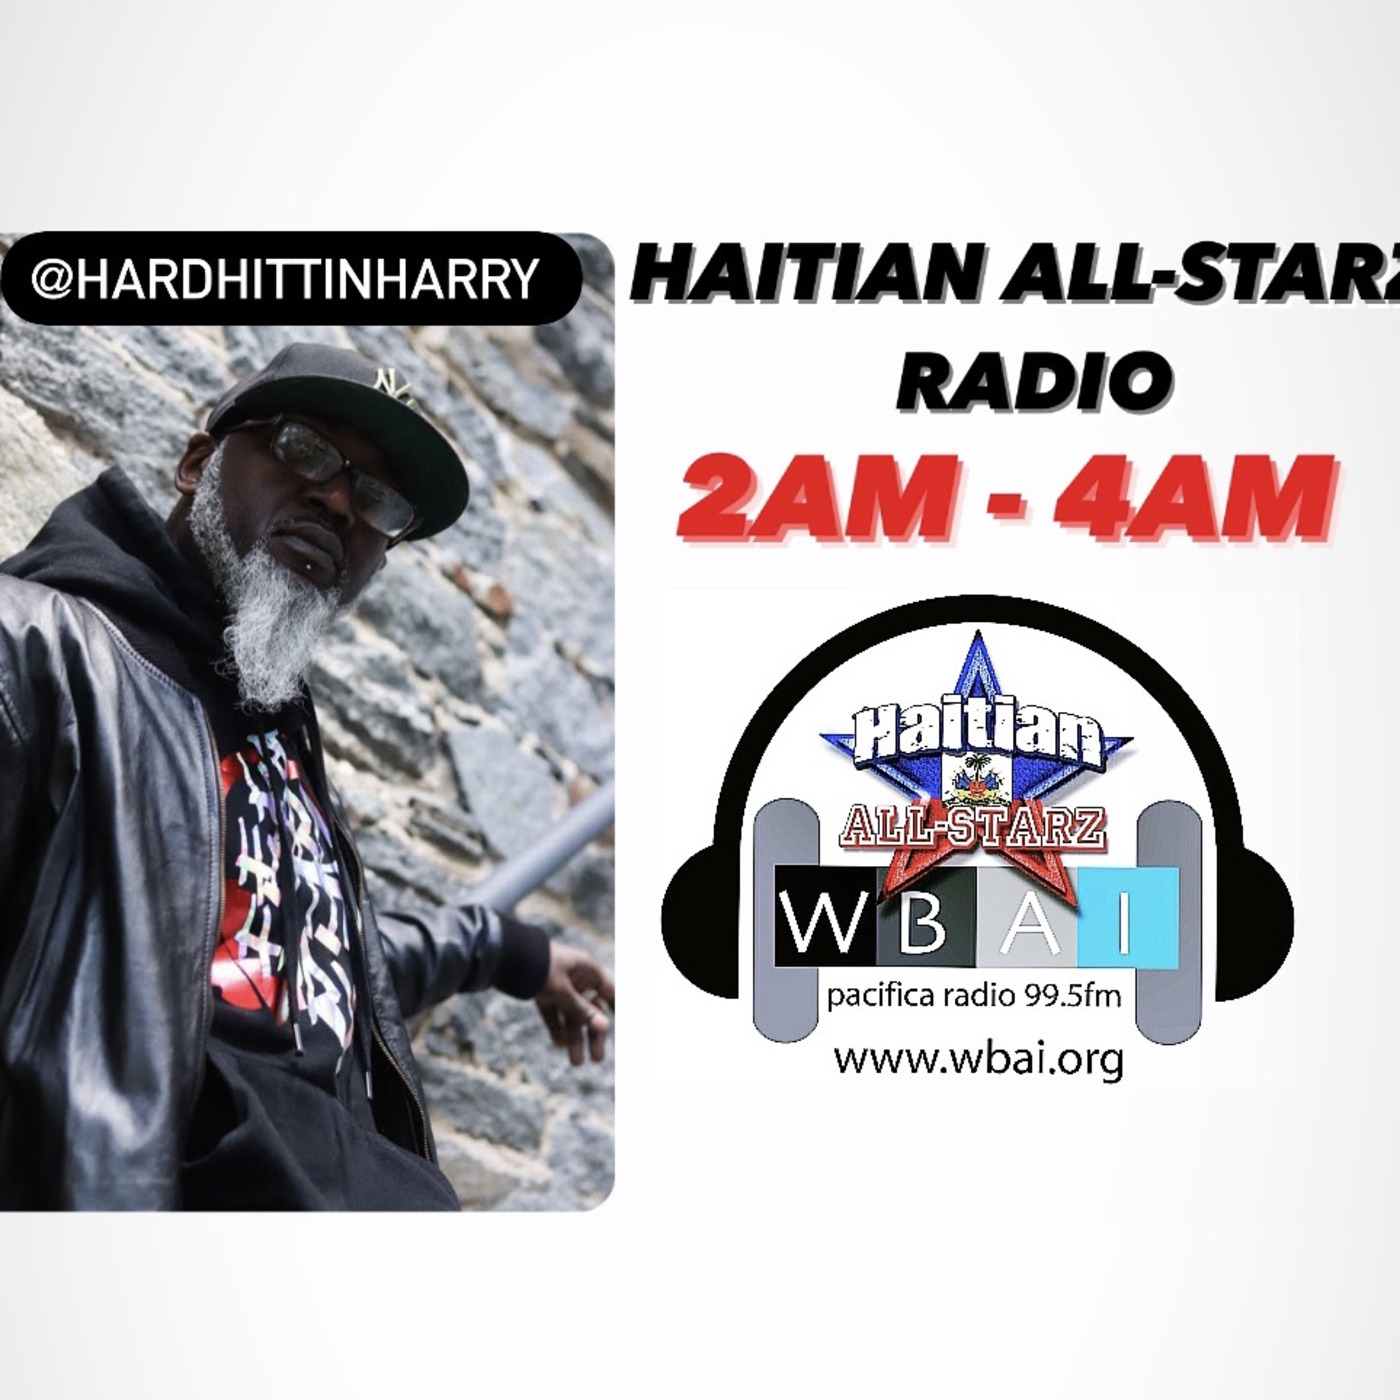 Episode 167: HAITIAN ALL-STARZ RADIO - WBAI 99.5 FM - EPISODE #163 - HARD HITTIN HARRY